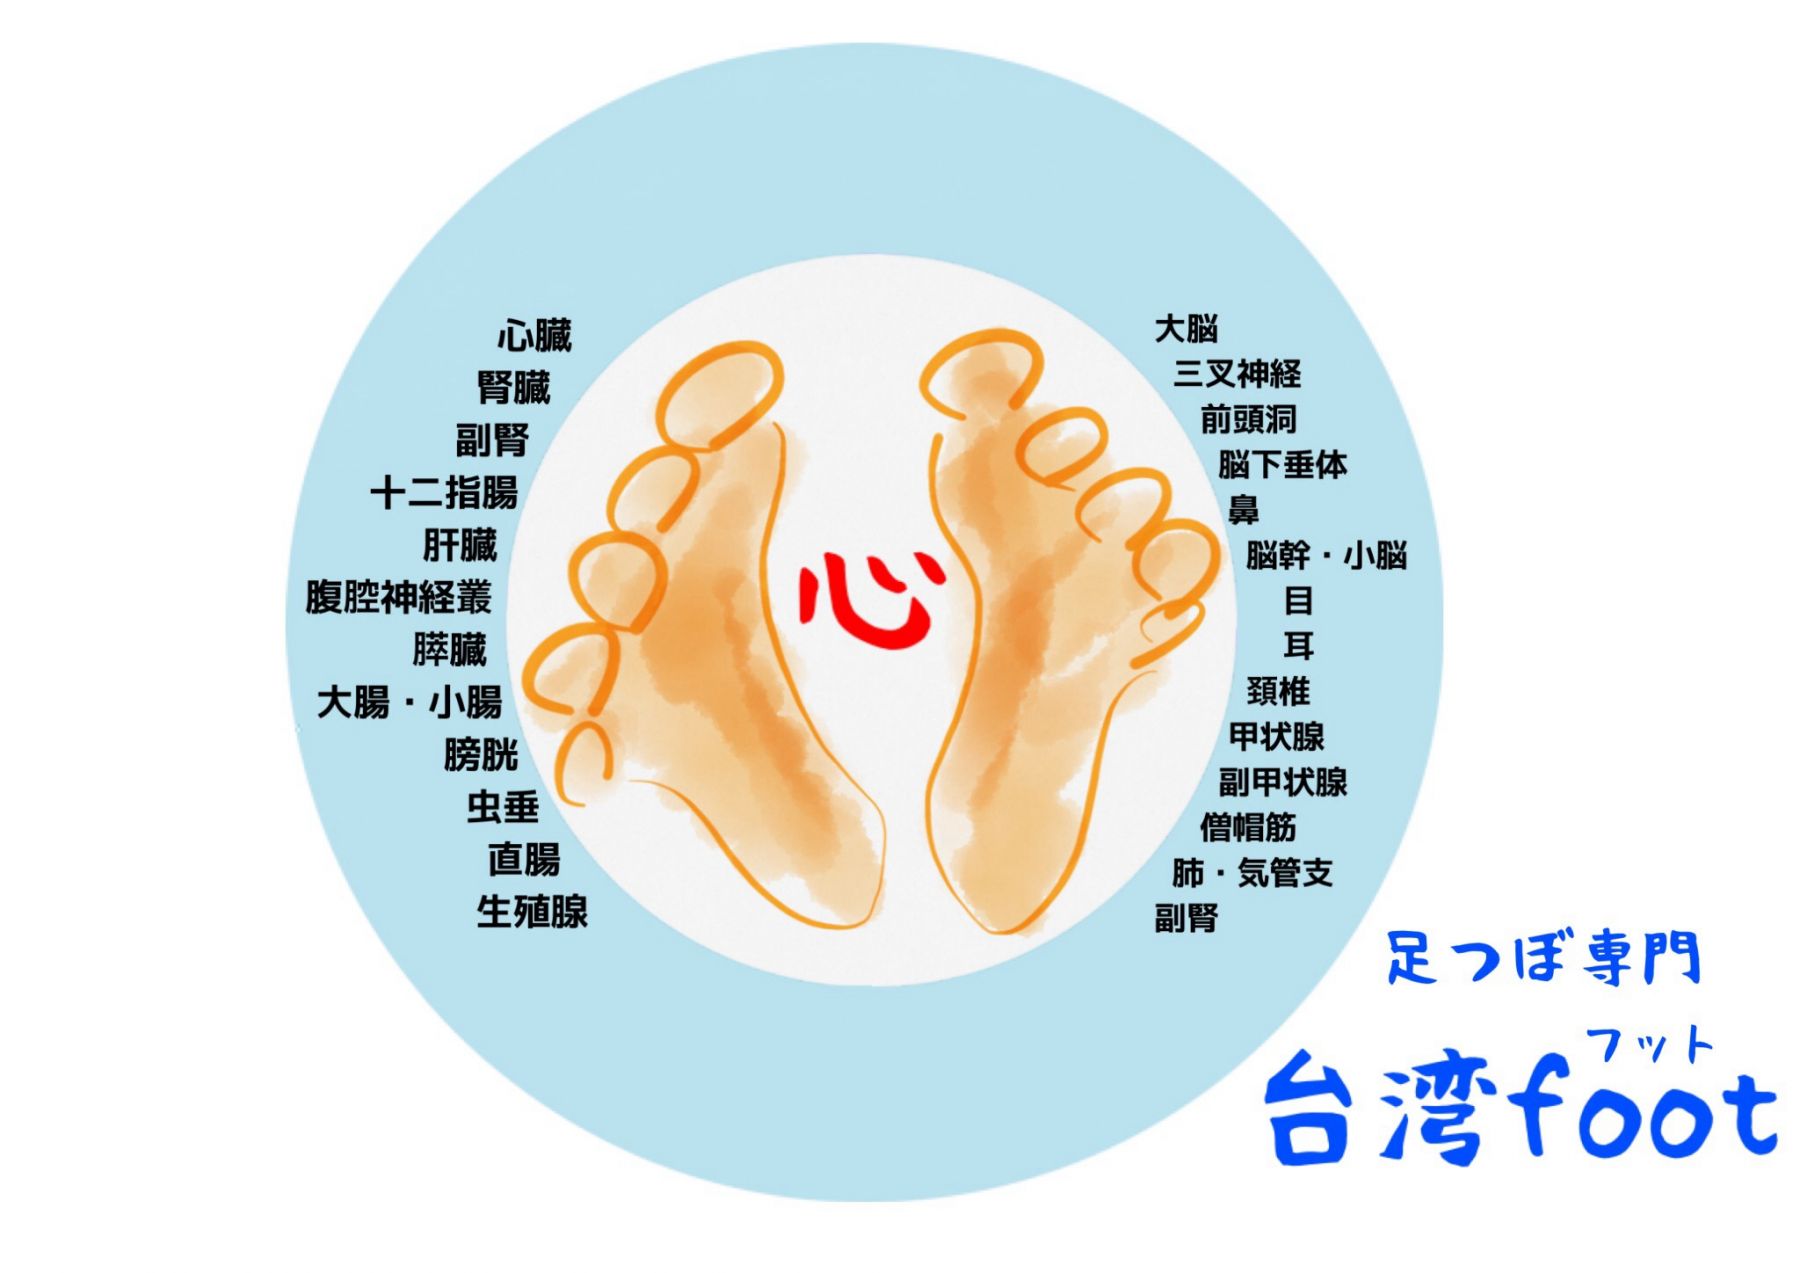 メニュー 武蔵村山 足つぼ専門 台湾foot